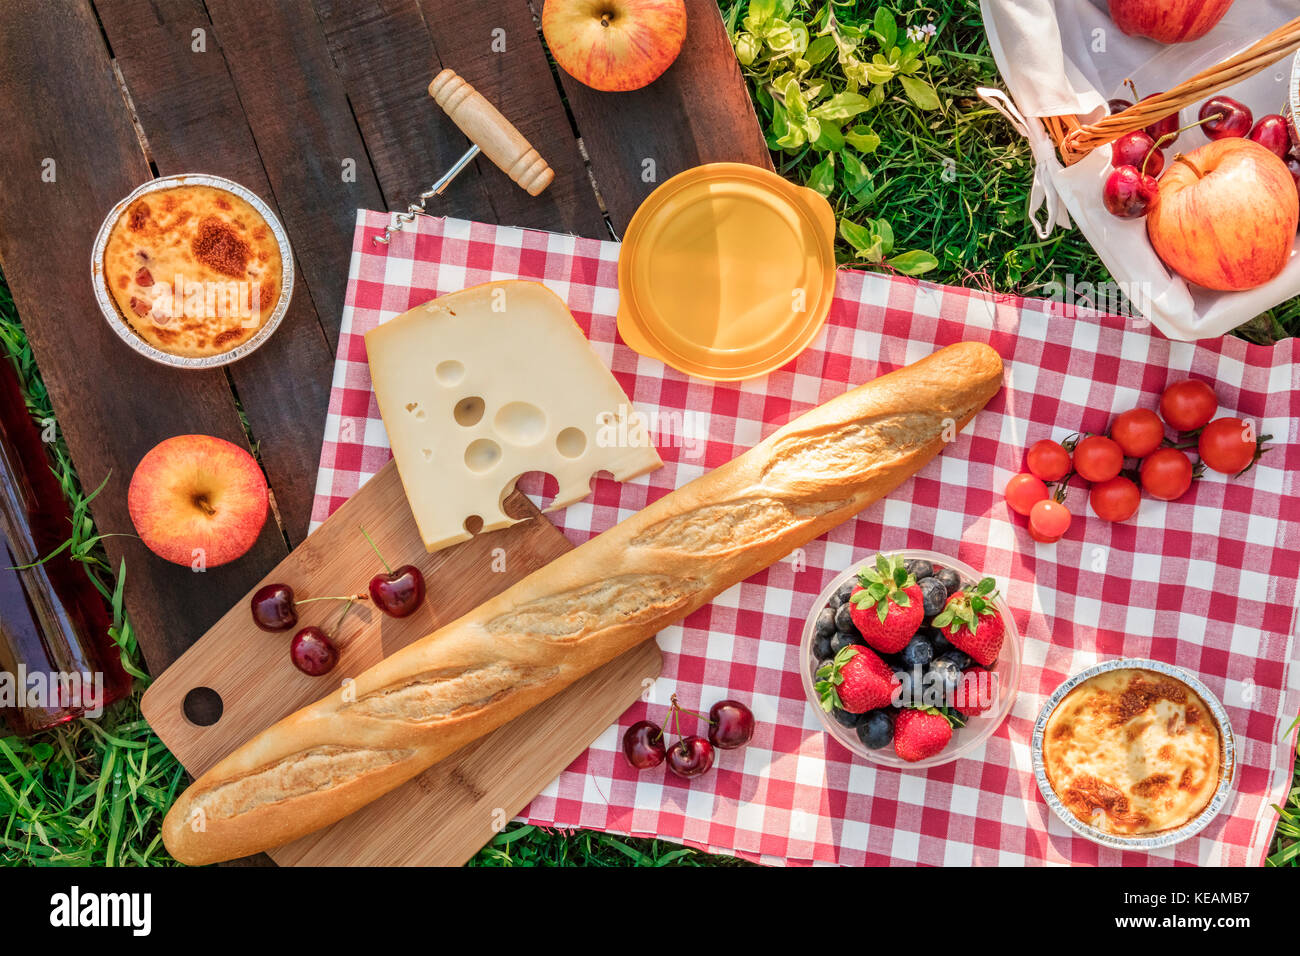 Ein Foto von einem Picknick mit einem Apple, eine Flasche rose Wein, frische Kirschen, eine Quiche, einen Korkenzieher und ein Stück Käse, auf einem rustikalen Holzmöbeln b Stockfoto